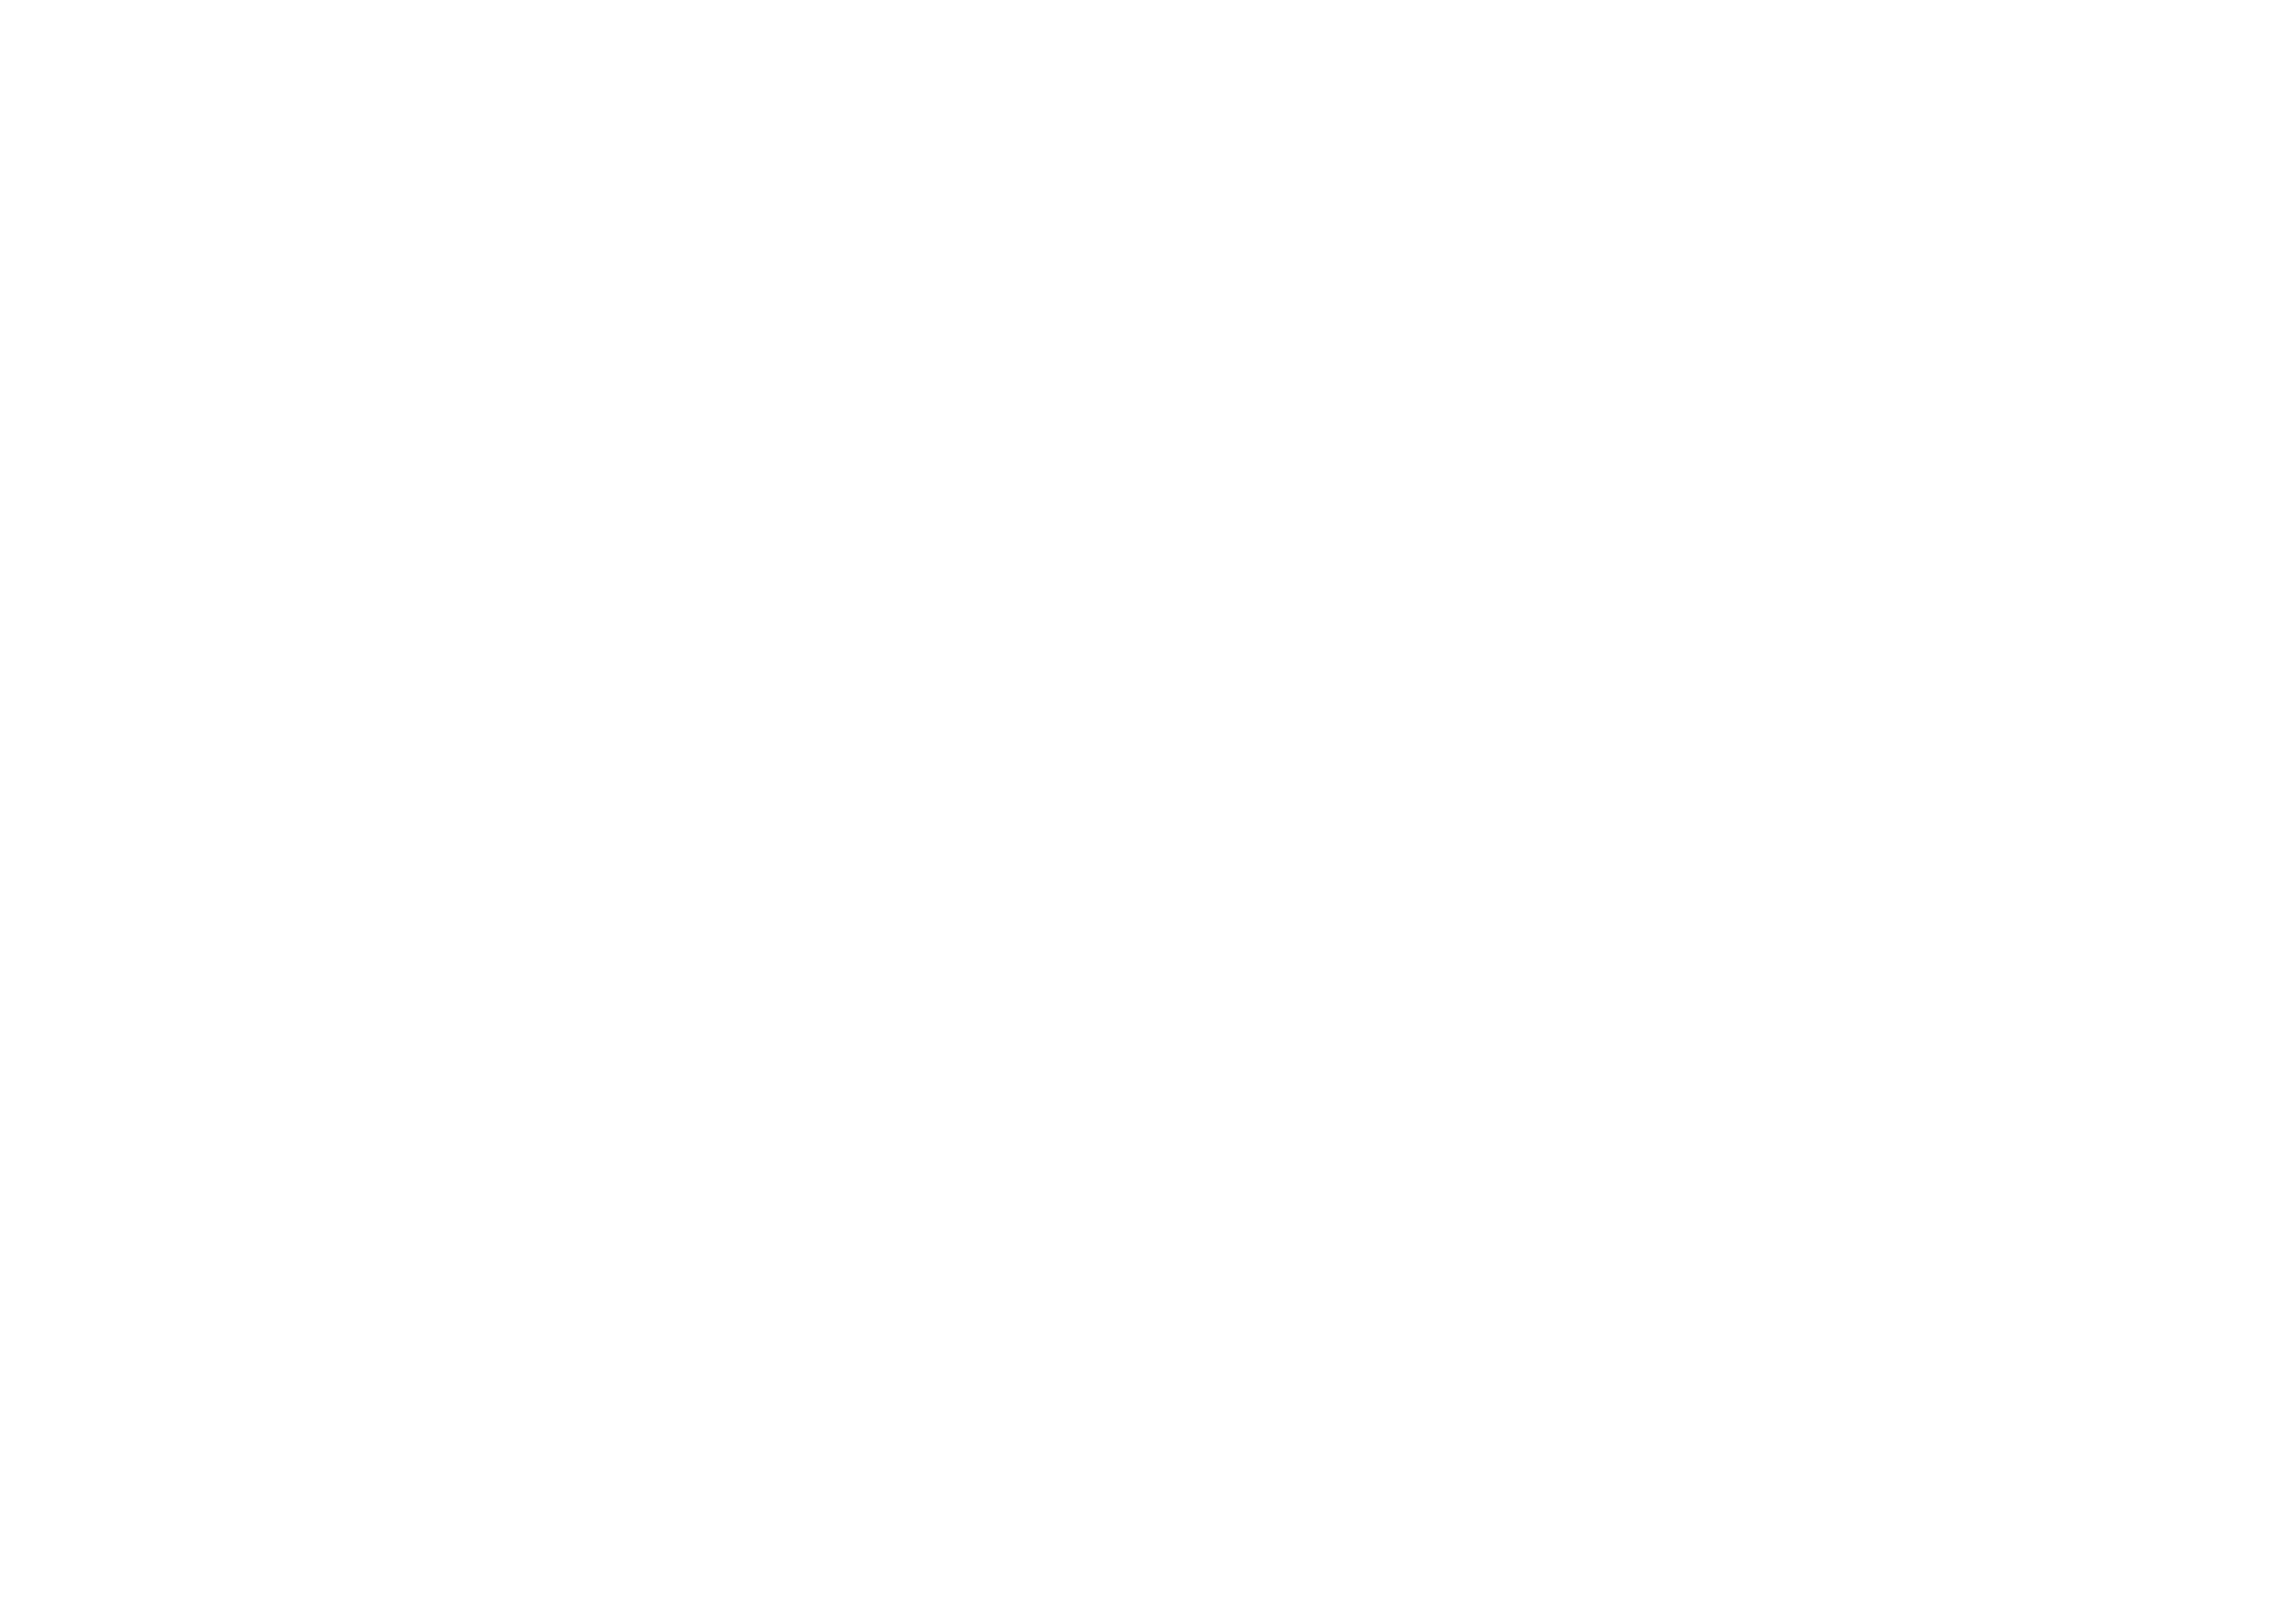 droneexpert